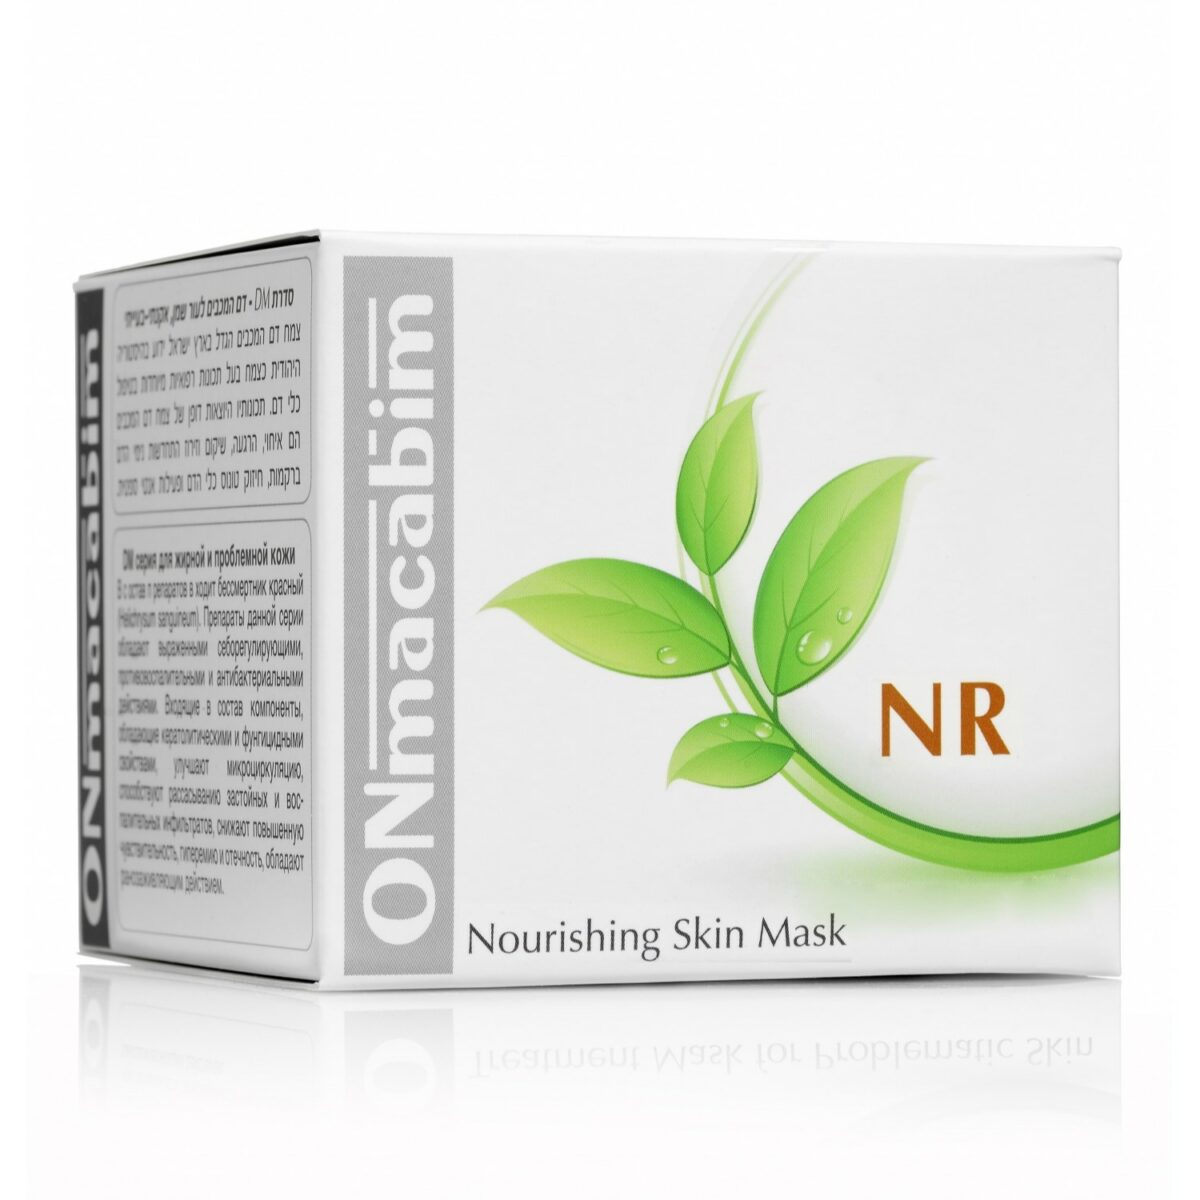 NR Nourishing Skin Mask Питательная маска для сухой и нормальной кожи 50 мл ONMACABIM